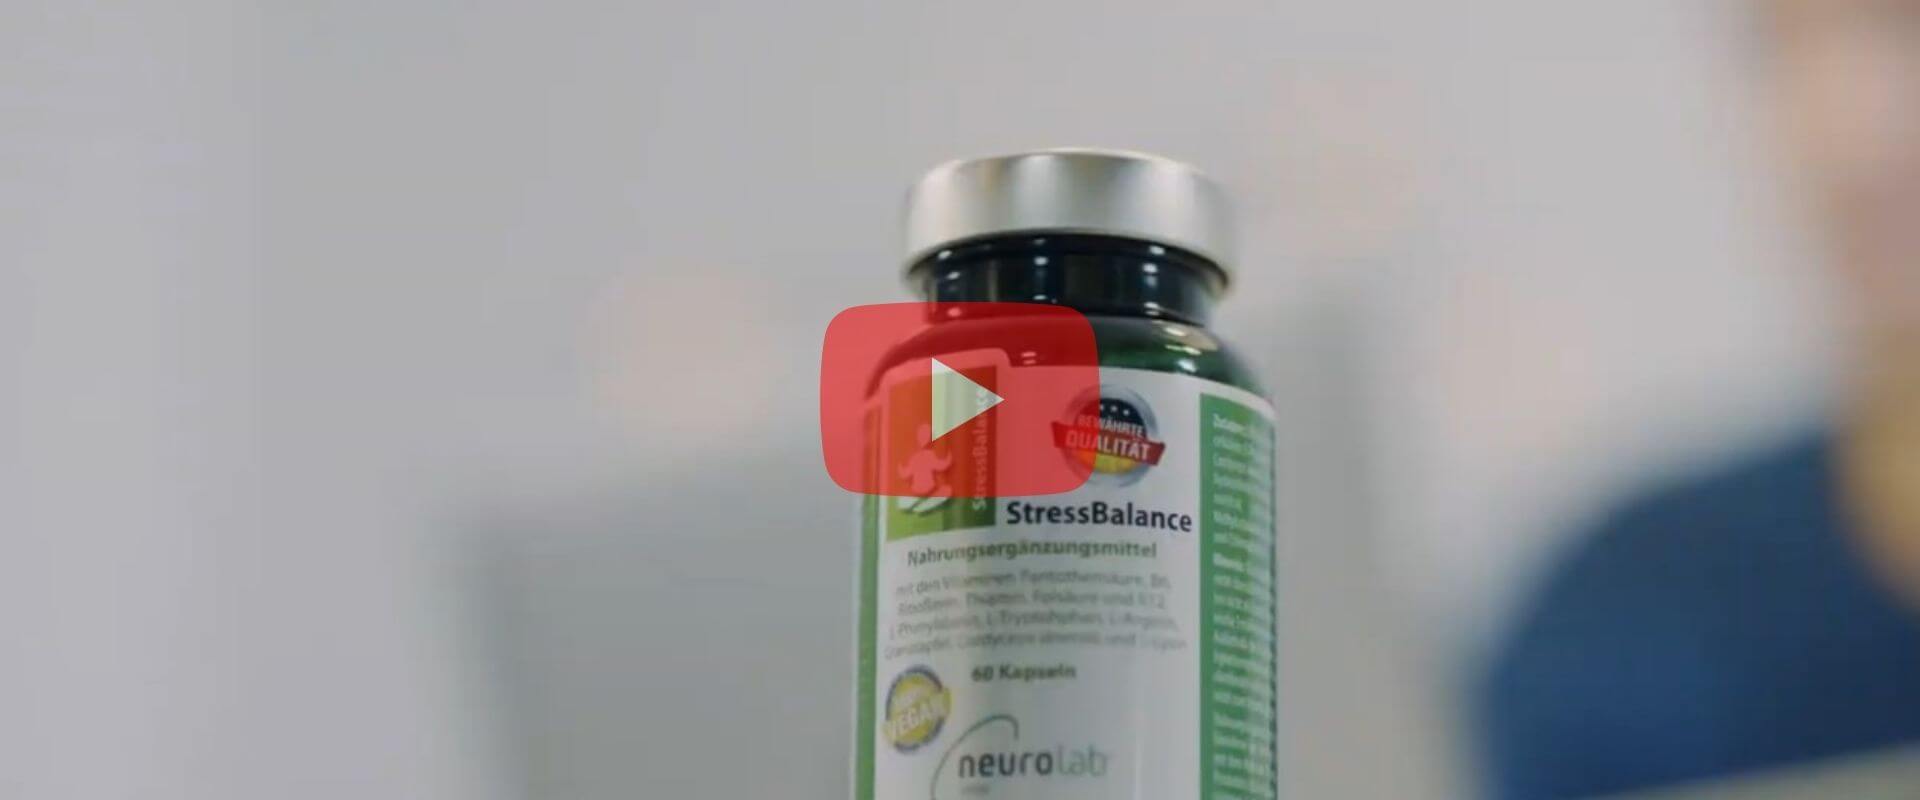 Neurolab Vital StressBalance - Vitamine und Aminosäuren gegen Stress